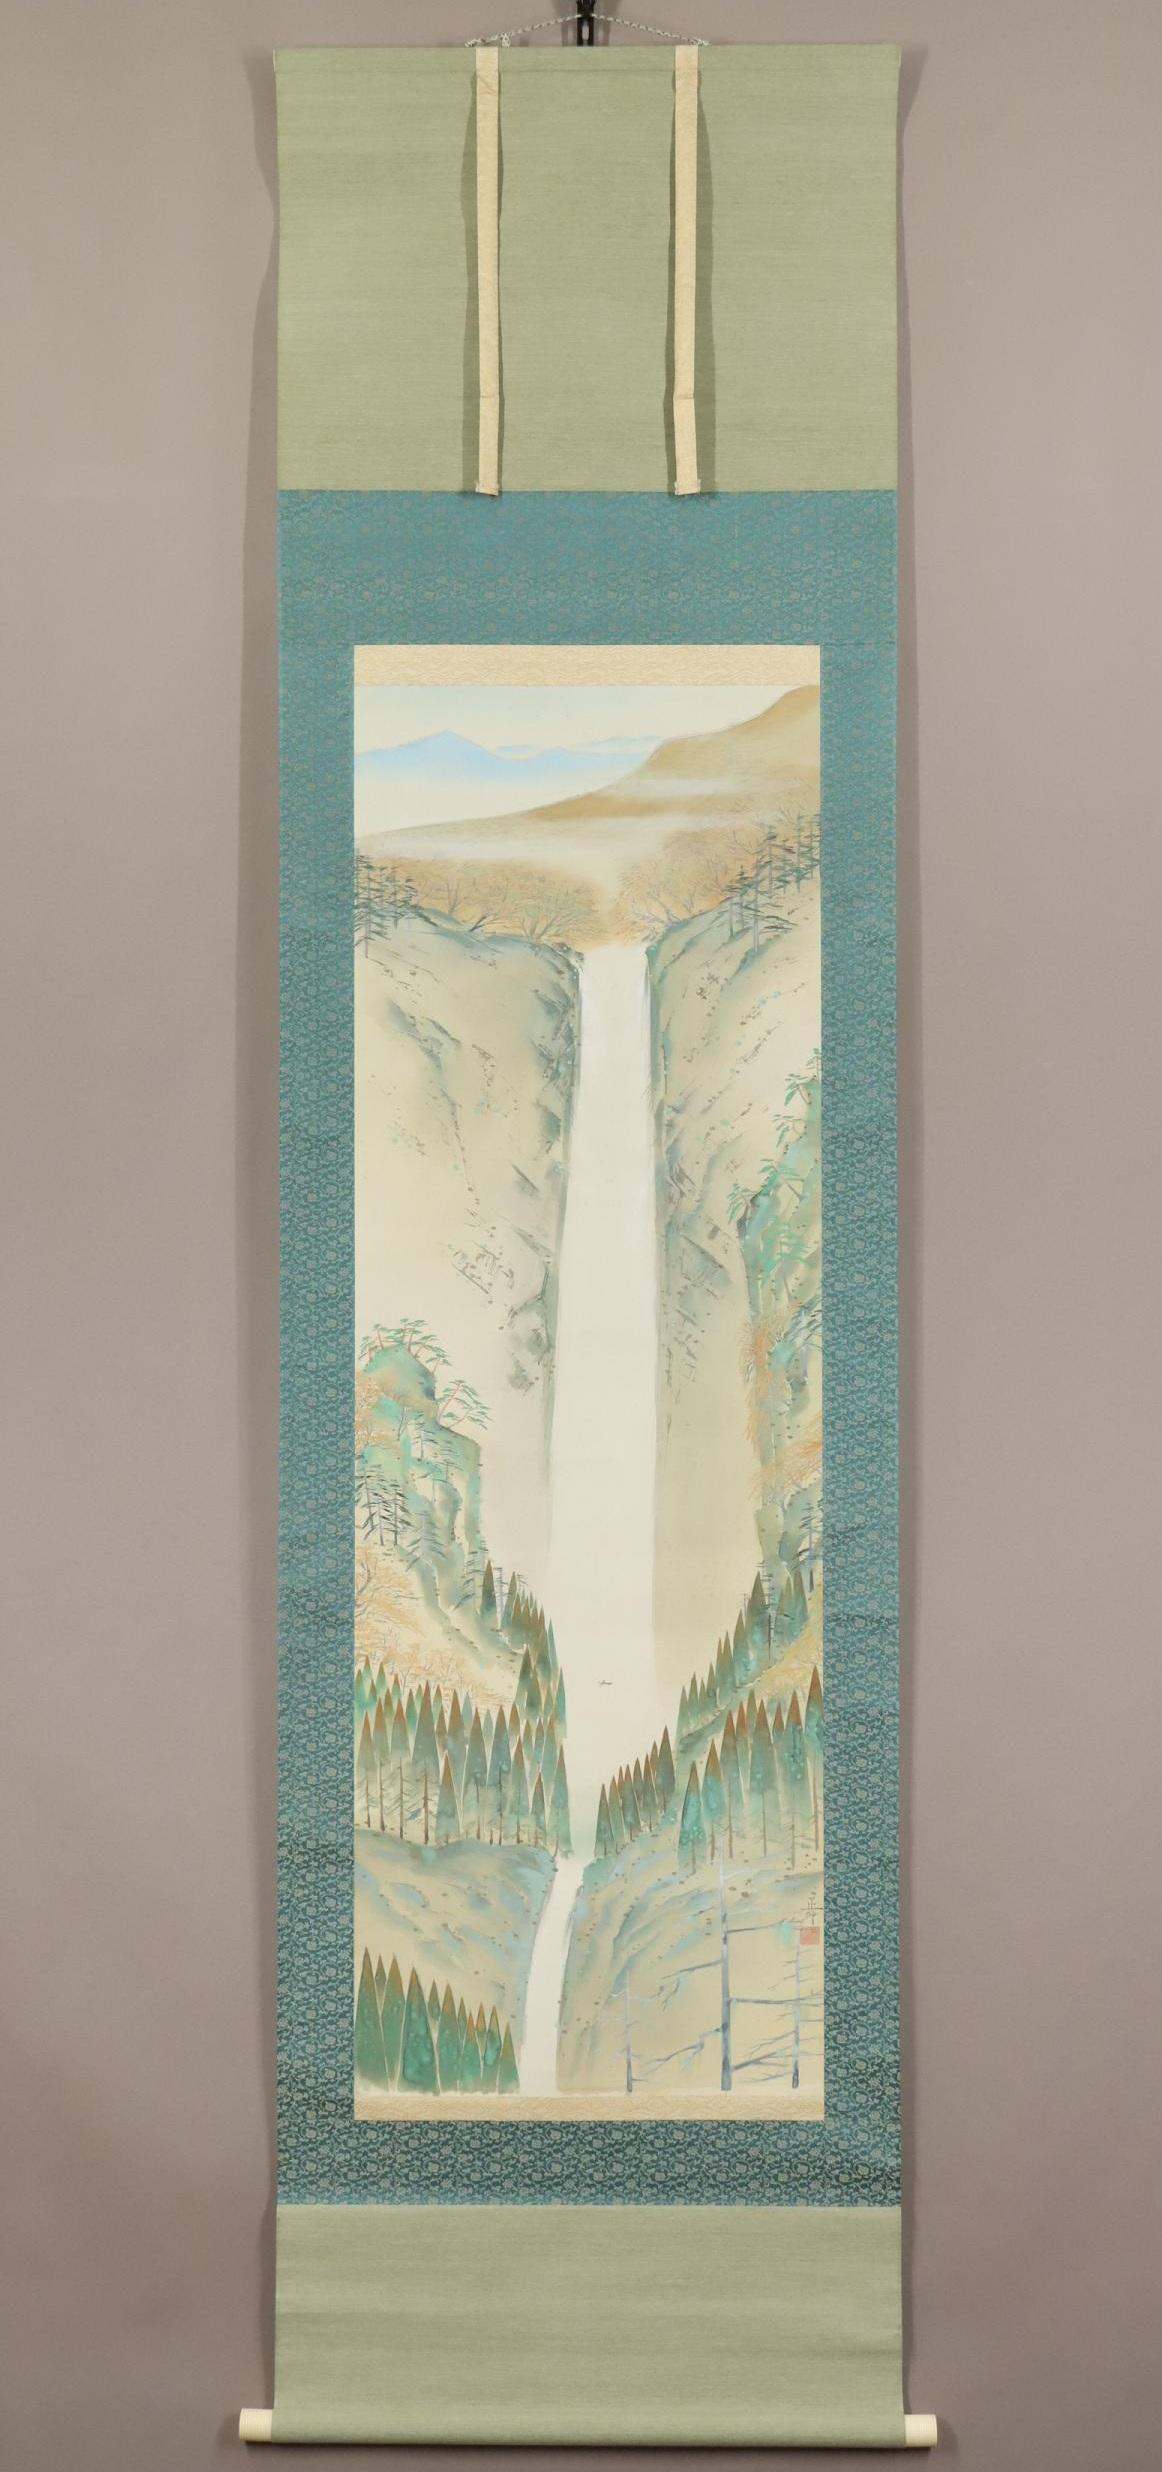 [Œuvre d'art authentique] ◆ Tadashi Mamiya ◆ Cascade ◆ Peinture japonaise ◆ Préfecture de Saitama ◆ Peint à la main ◆ Soie ◆ Parchemin à suspendre

Découvrez la beauté sereine de la 